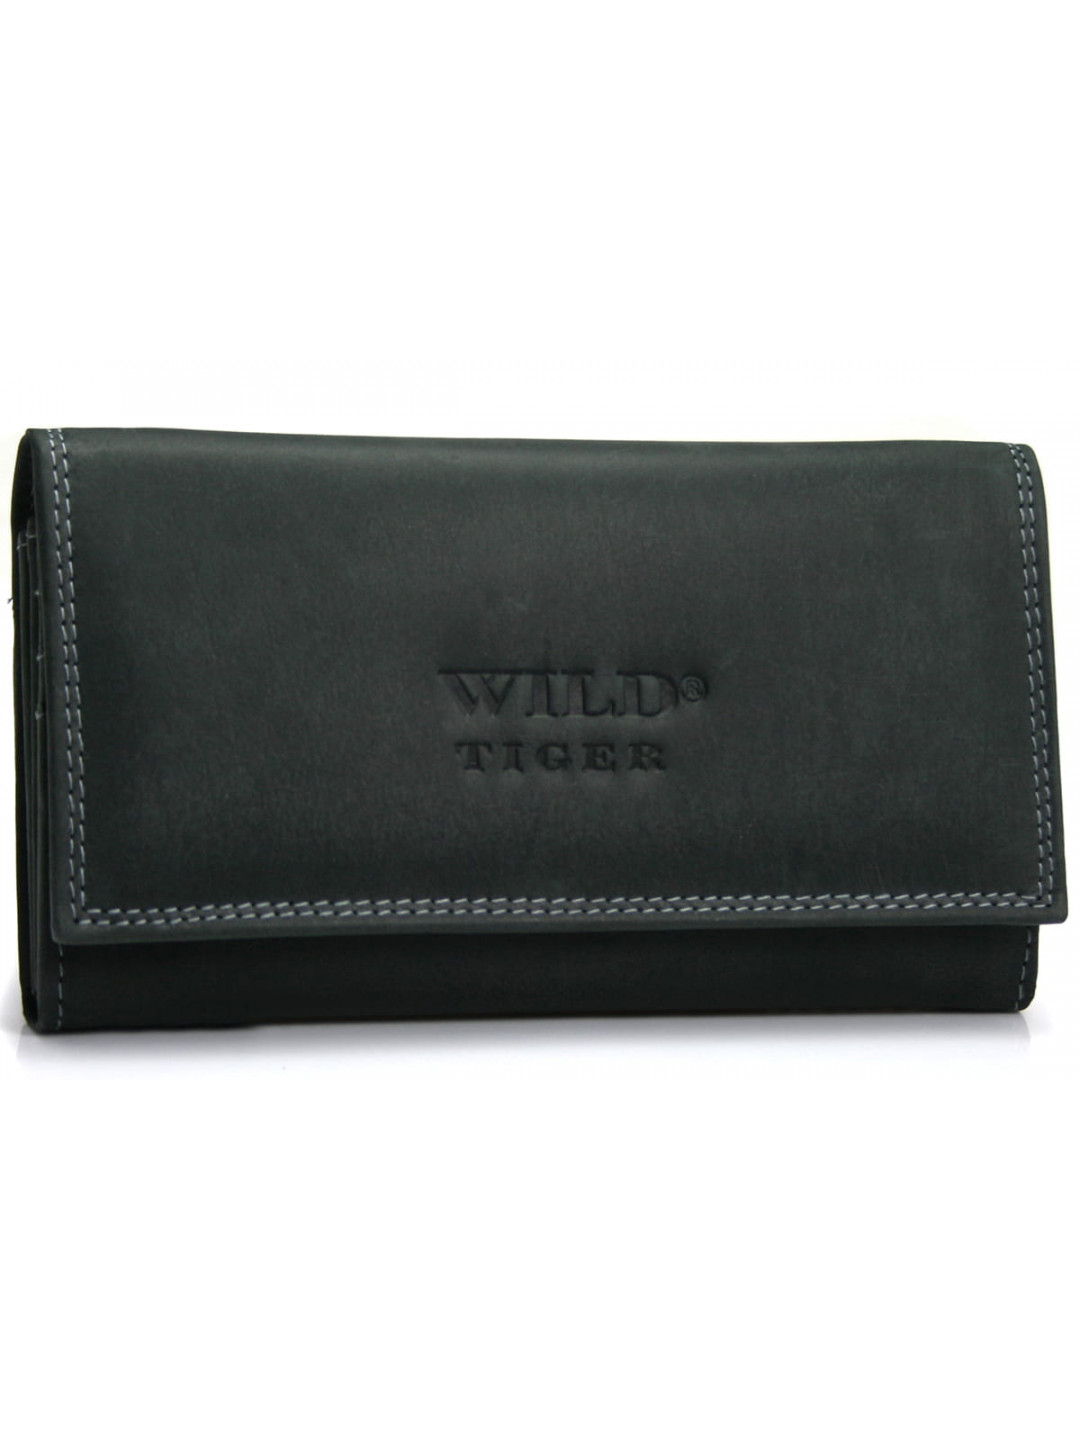 Dámská velká kožená peněženka Wild Tiger Terra černá